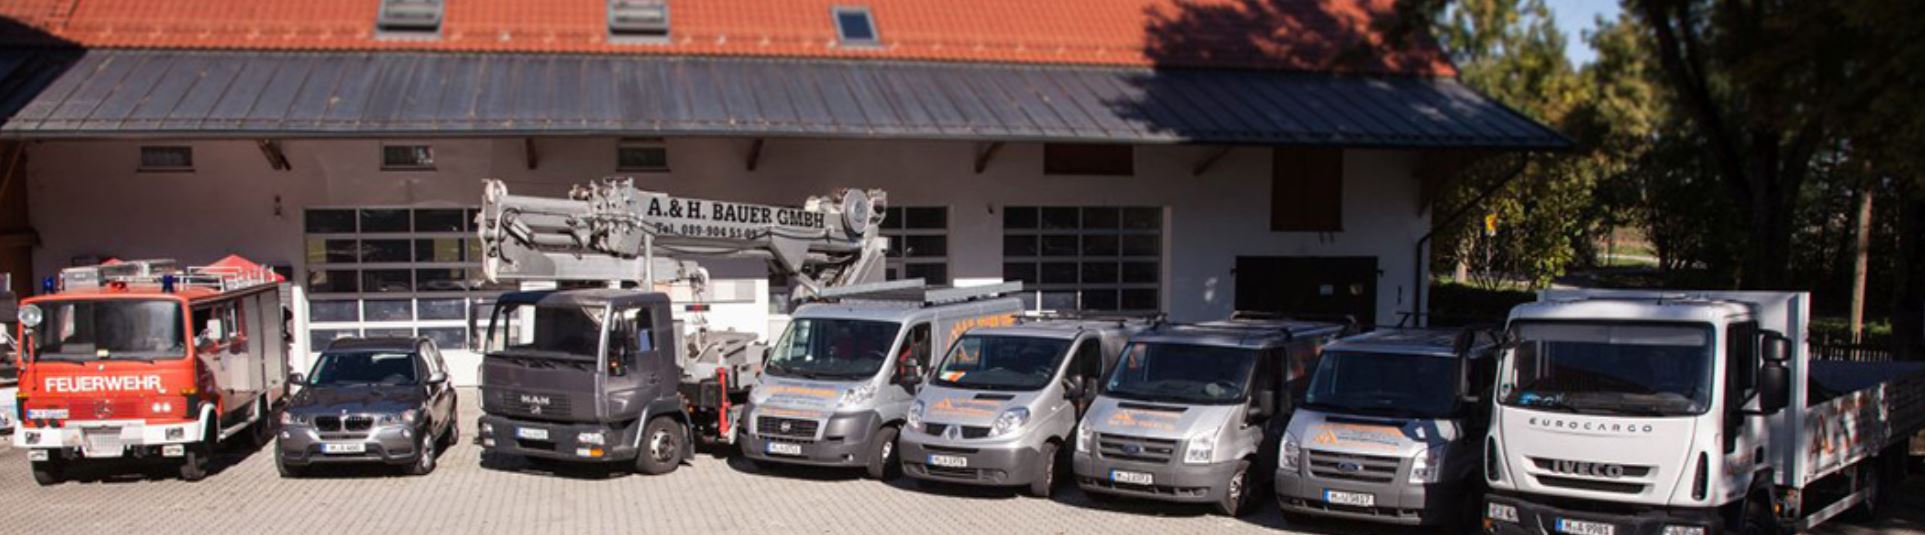 Kundenbild groß 5 Spengler und Dachdecker A. & H. Bauer GmbH München